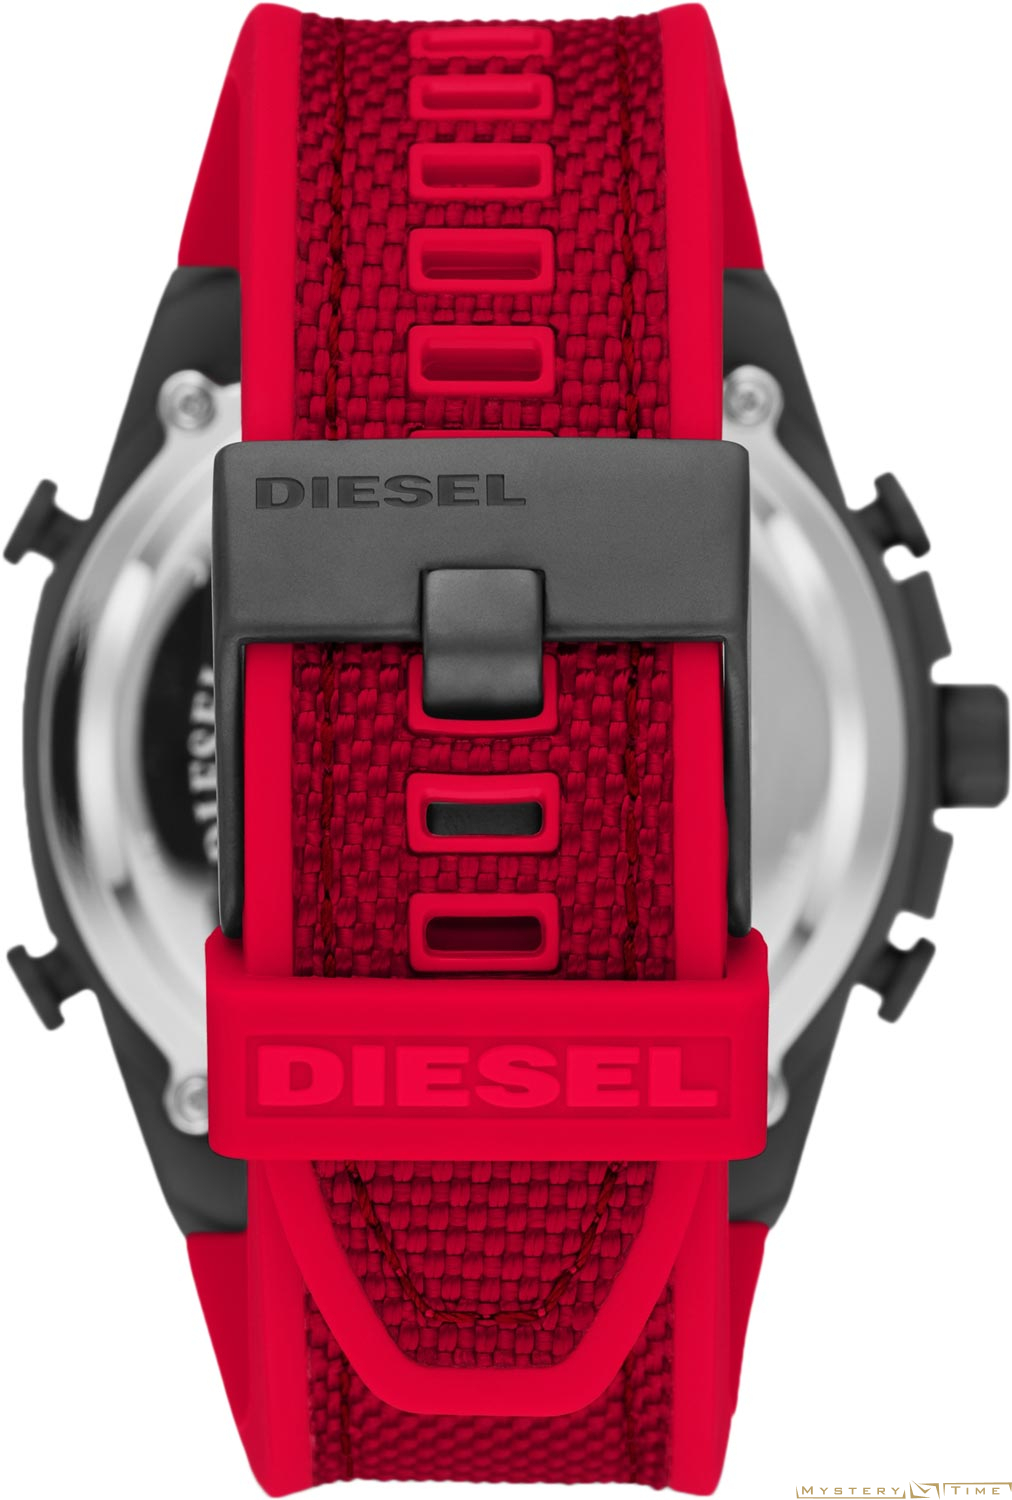 Diesel DZ4551